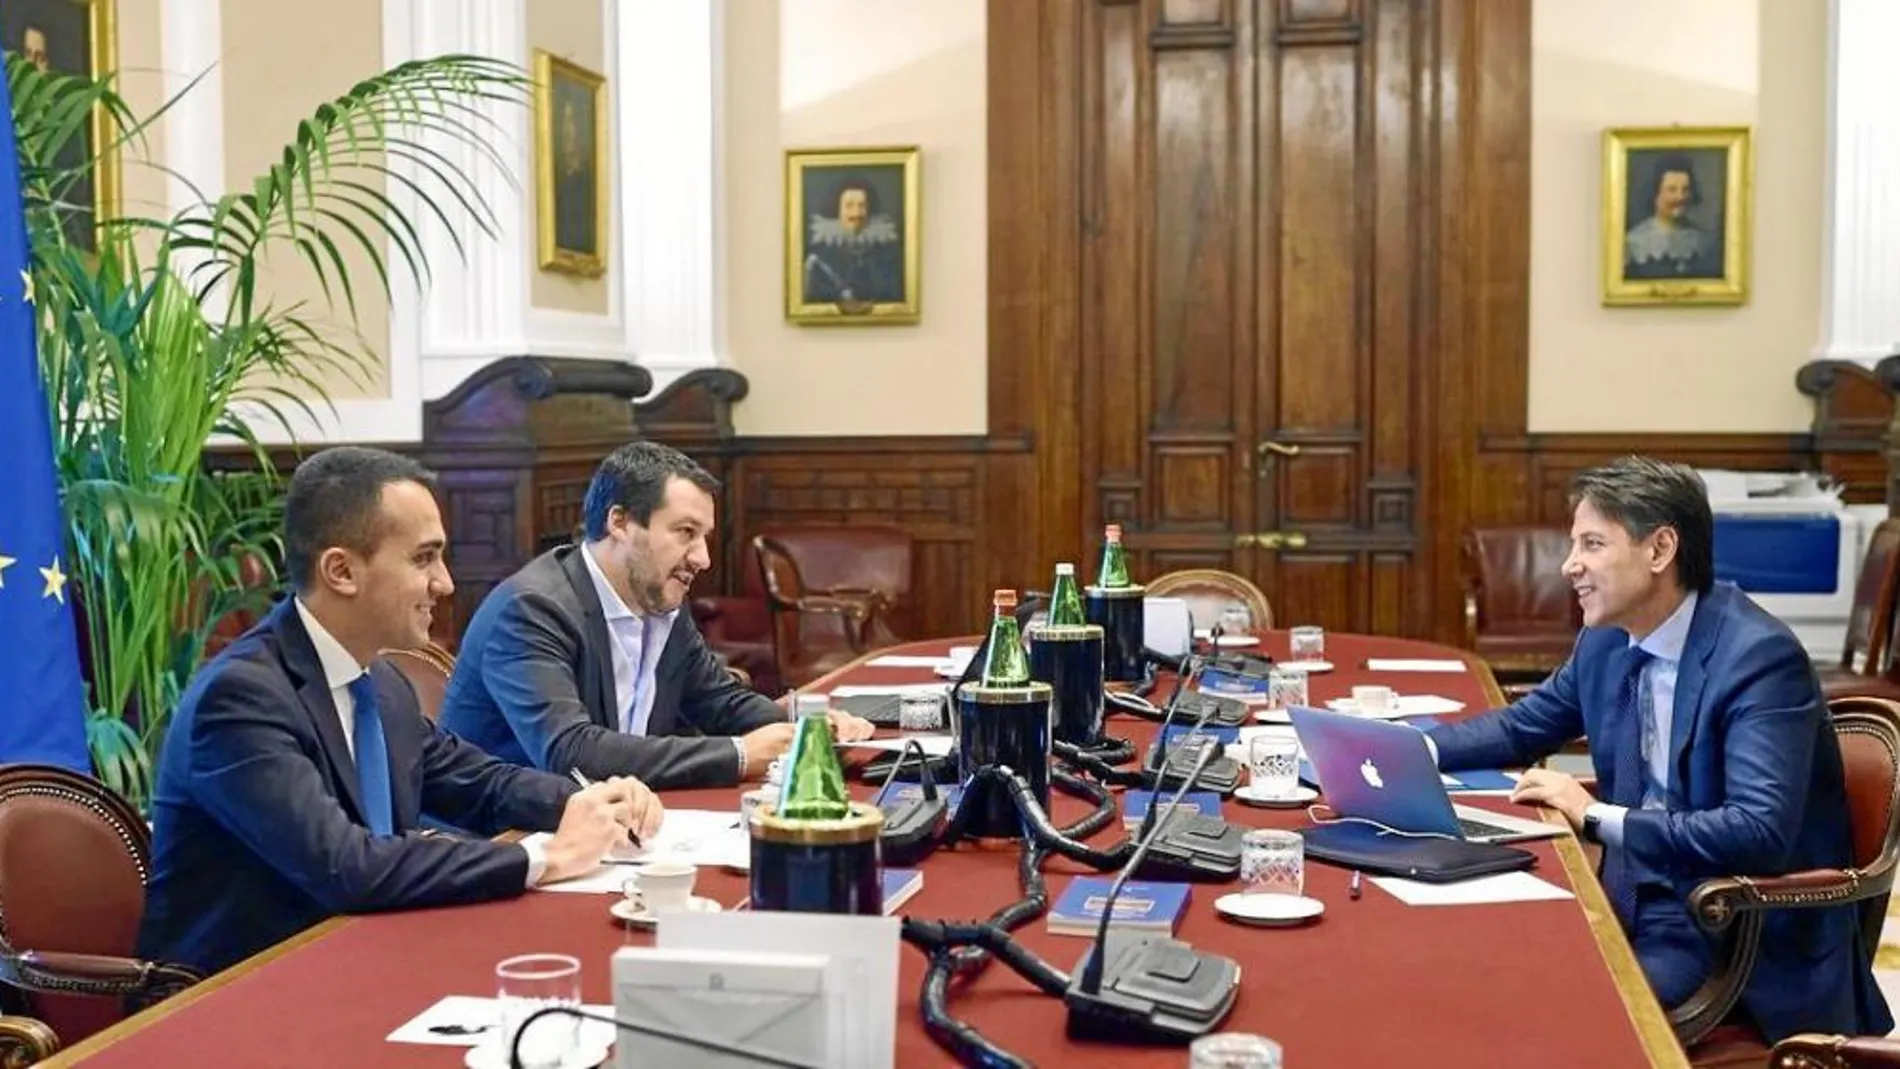 Luigi Di Maio y Matteo Salvini (izquierda) hablan con el primer ministro italiano, Giuseppe Conte, para formar su primer gobierno de coalición